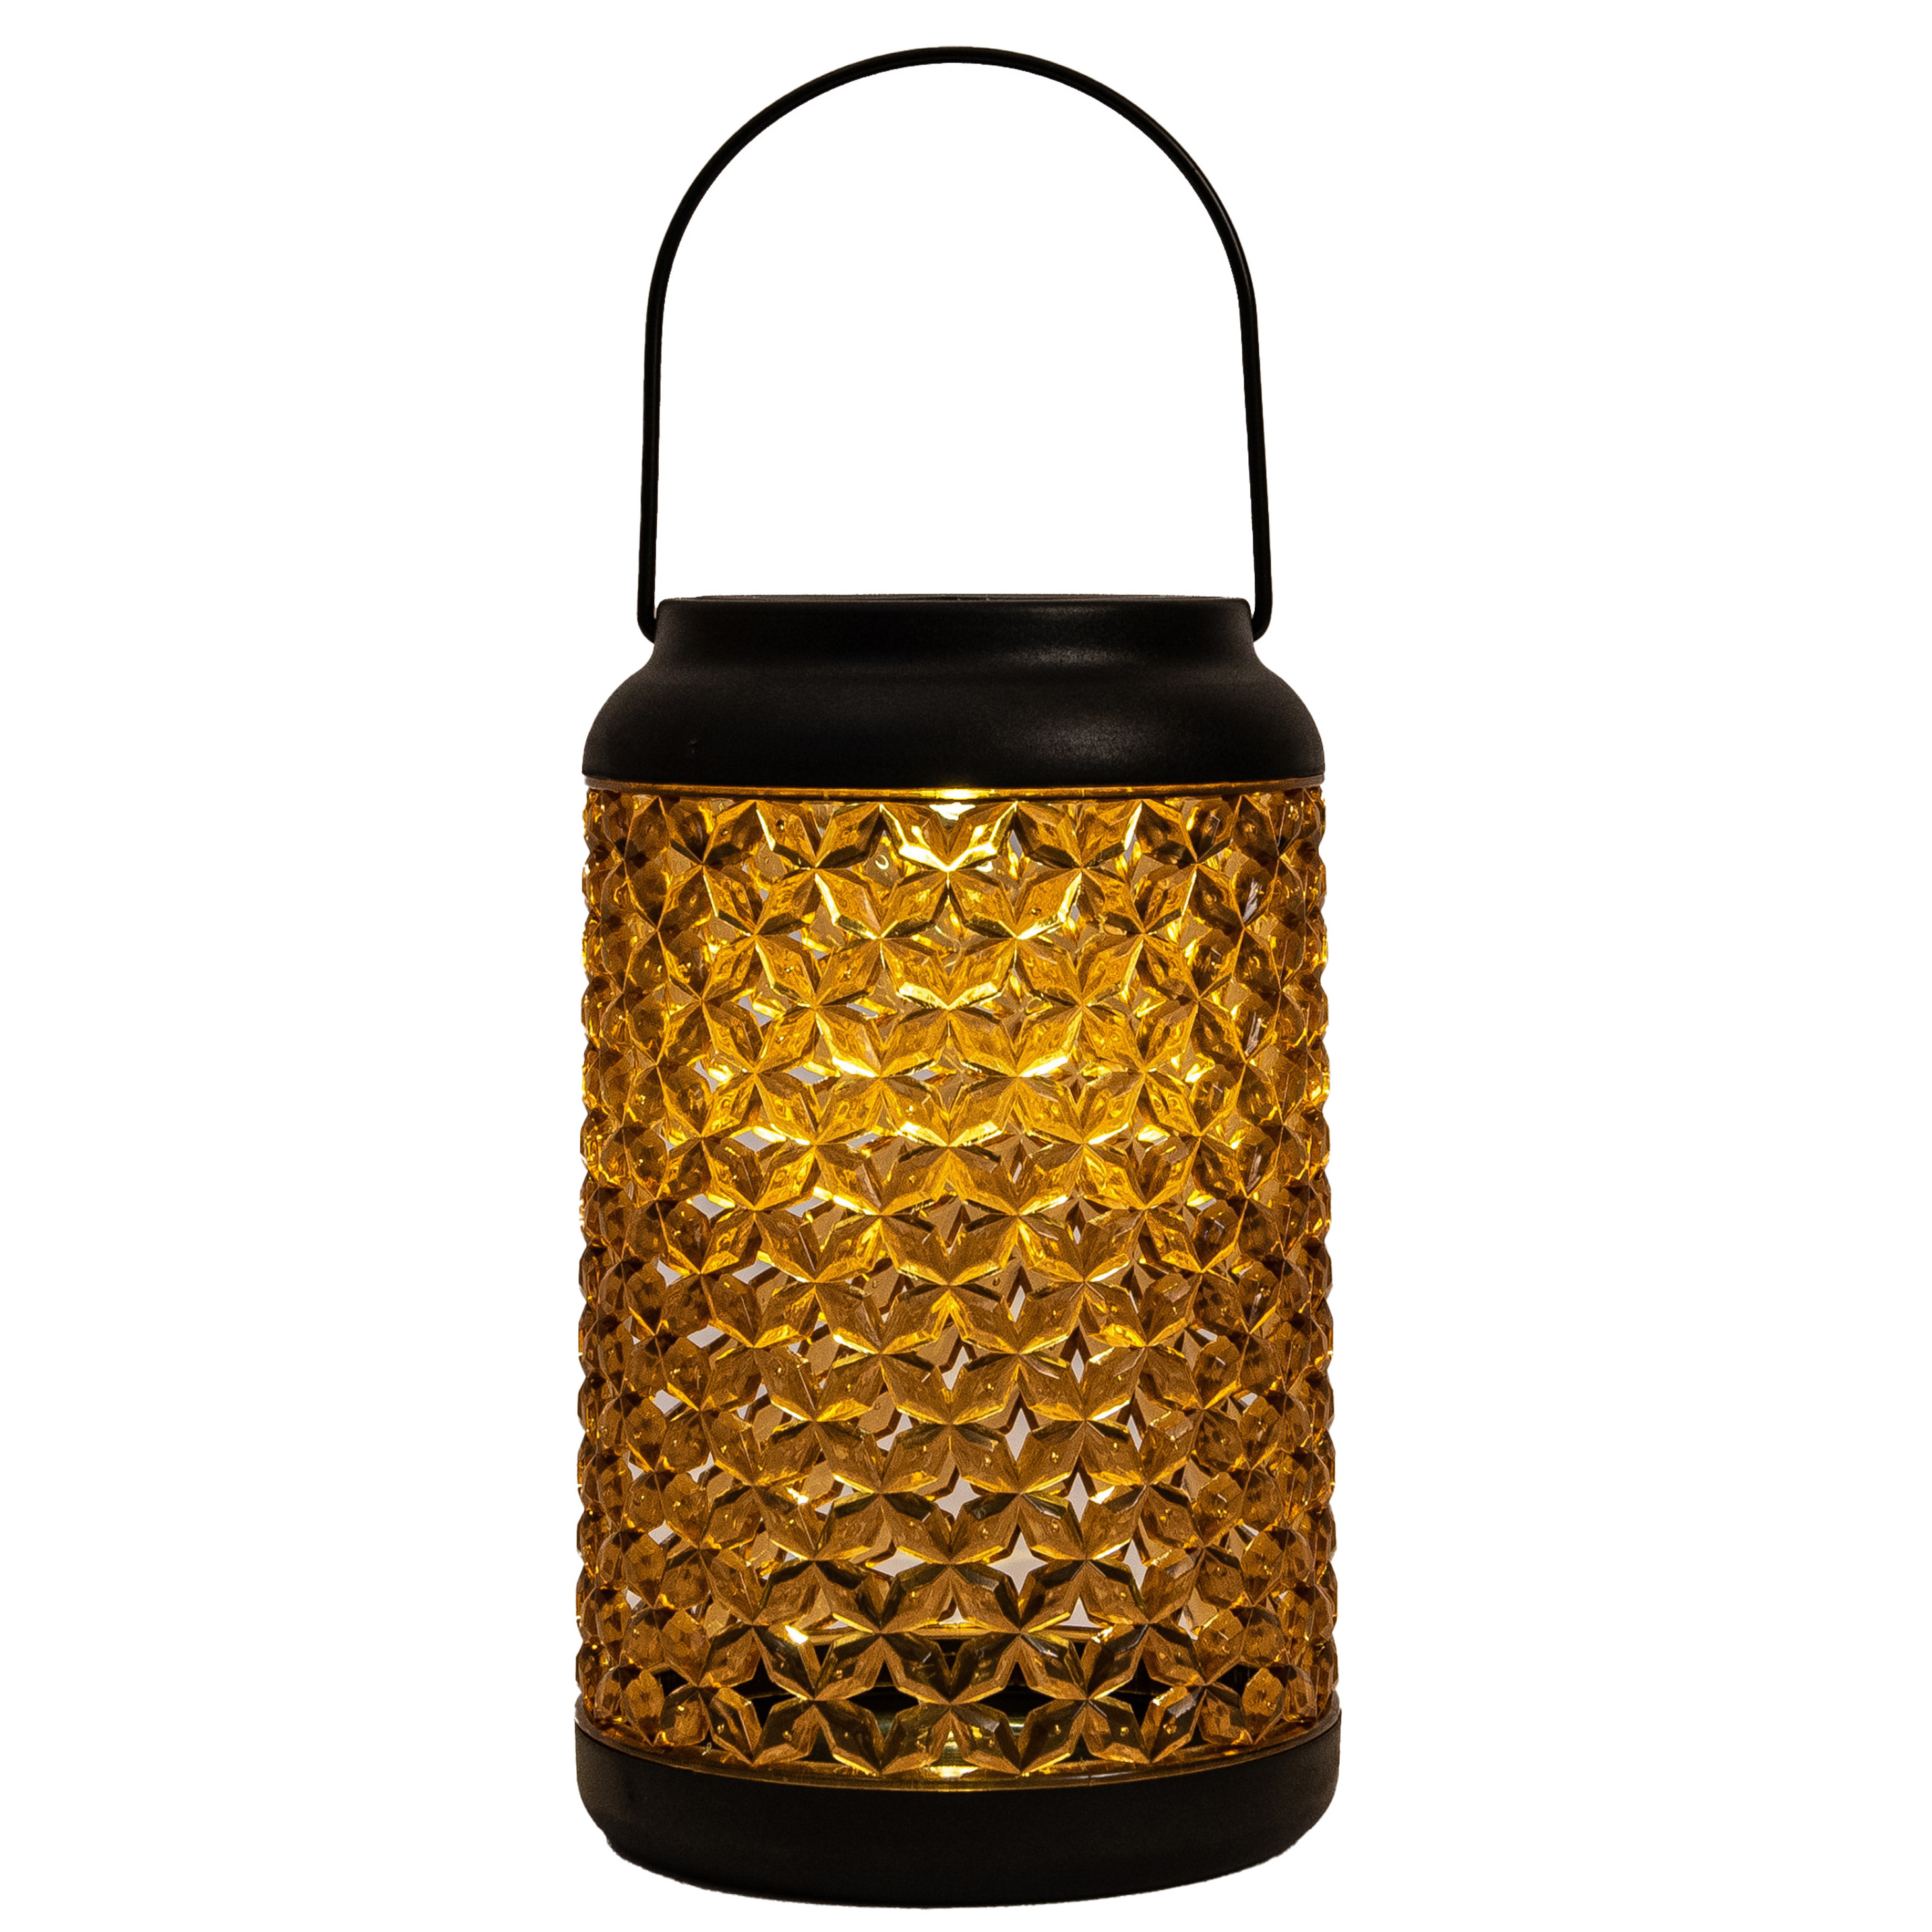 Solar lantaarn voor buiten D12,5 x H20 cm amber glas tafellamp